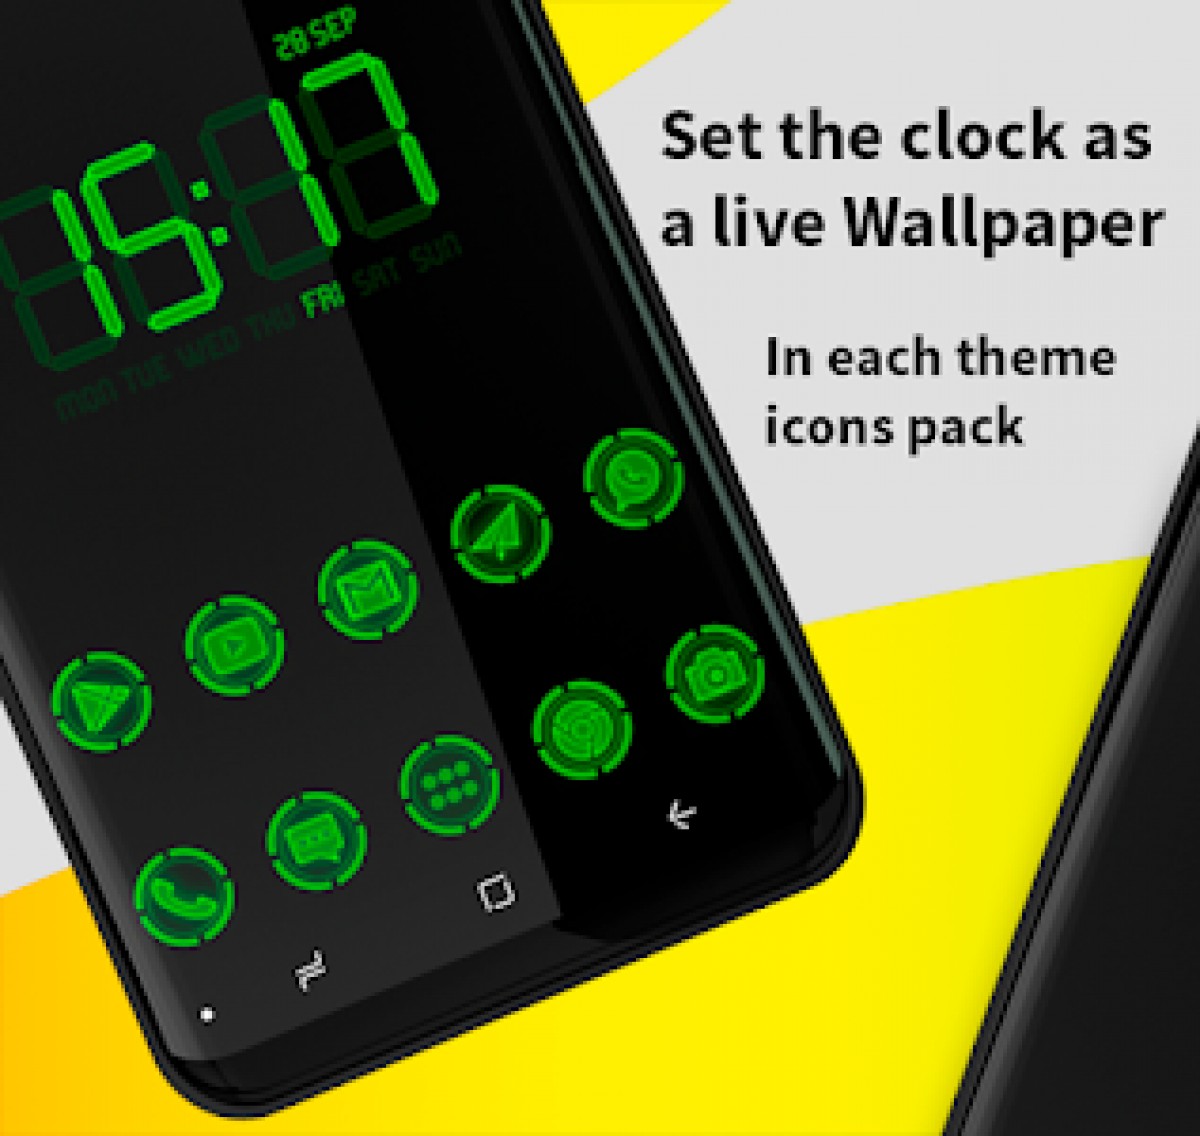 orologio live wallpaper,aggeggio,verde,tecnologia,elettronica,cellulare